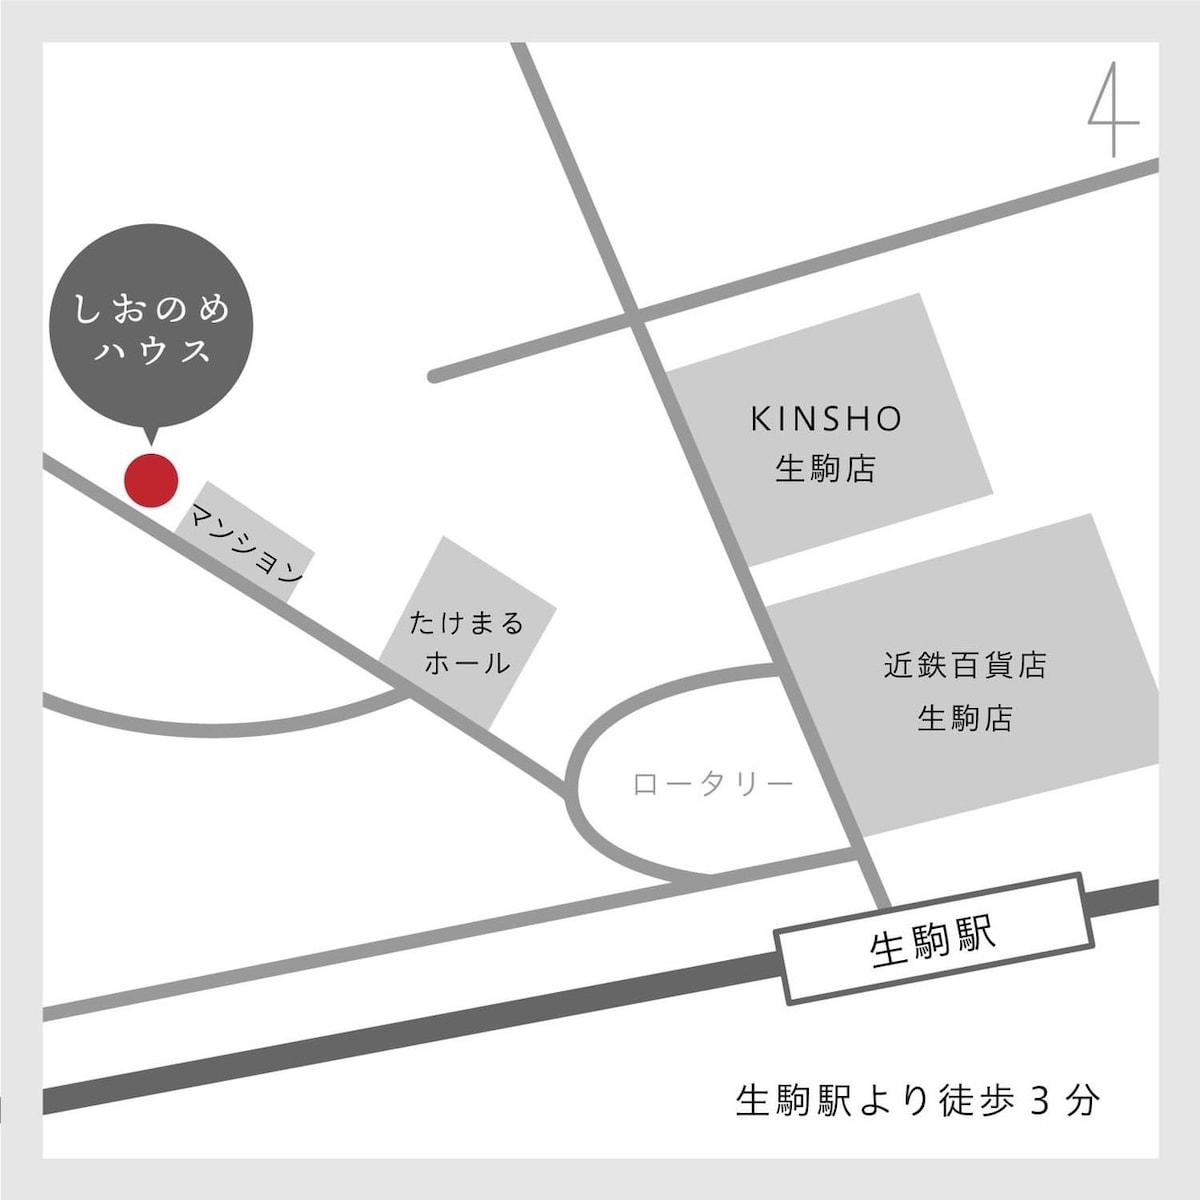 双床房②/步行3分钟即可抵达车站/安静的日式房屋/最多可入住2人的独立房间